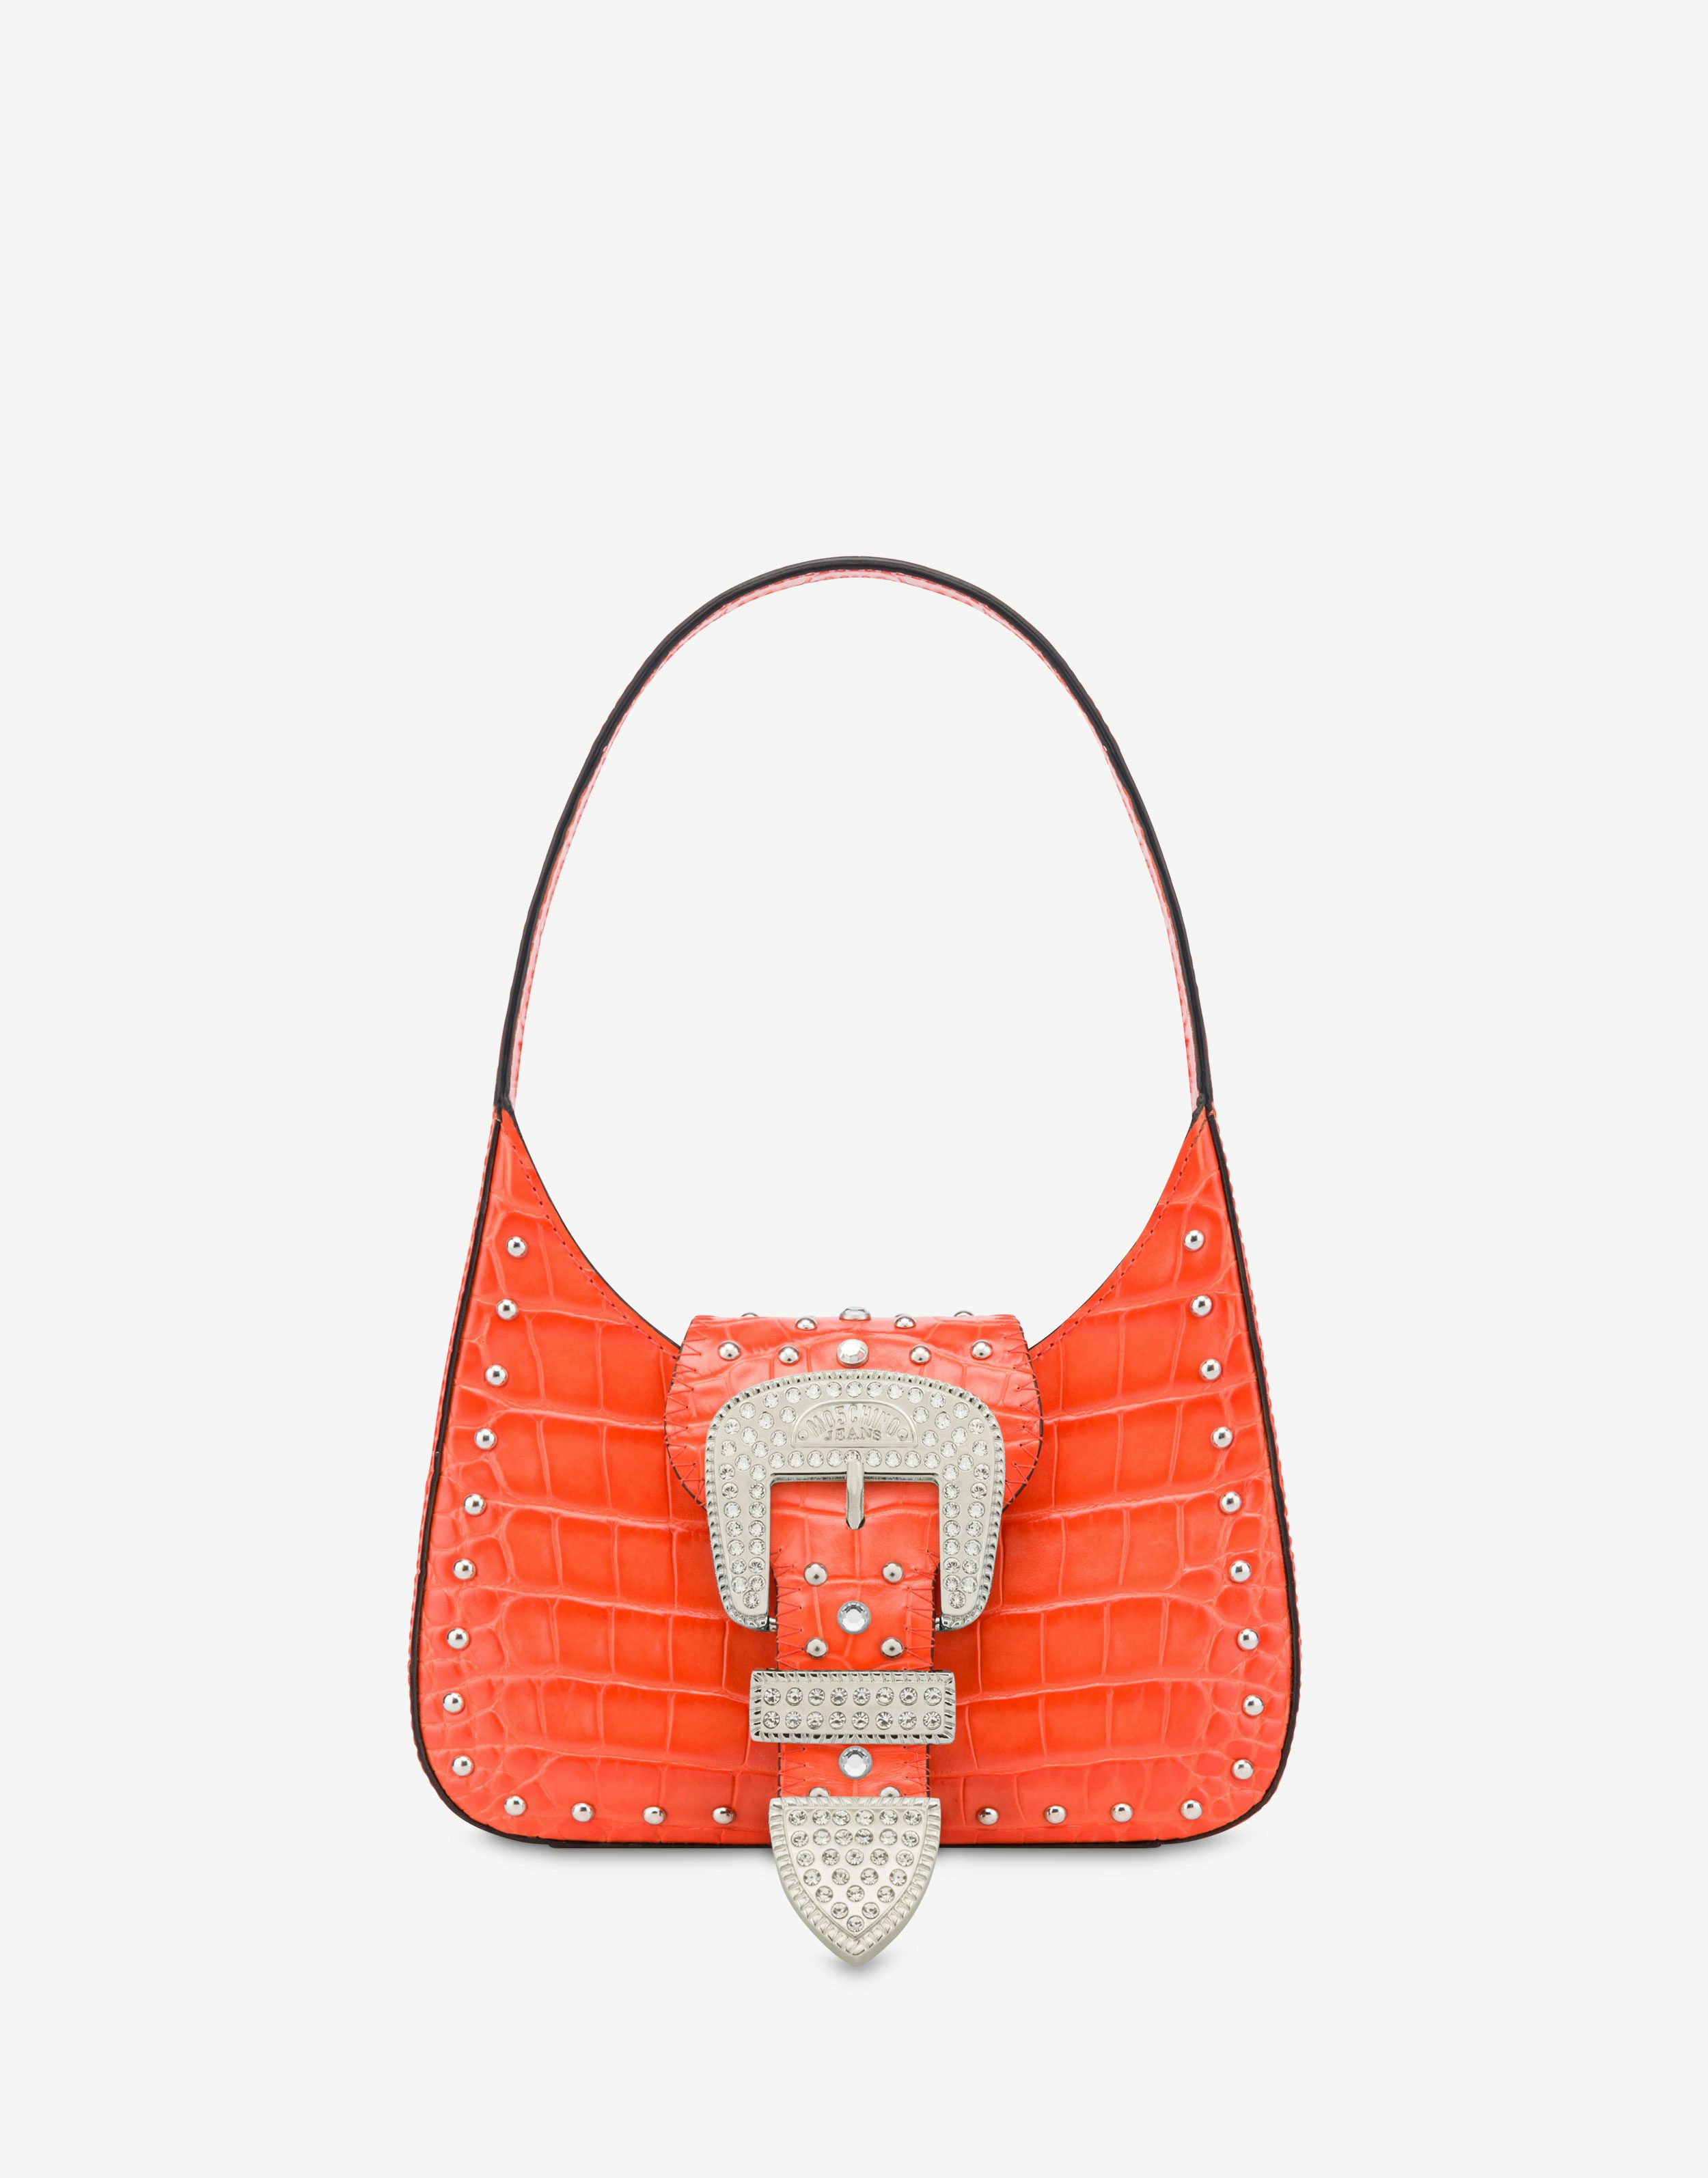 Maxi Buckle crocodile-print handbag